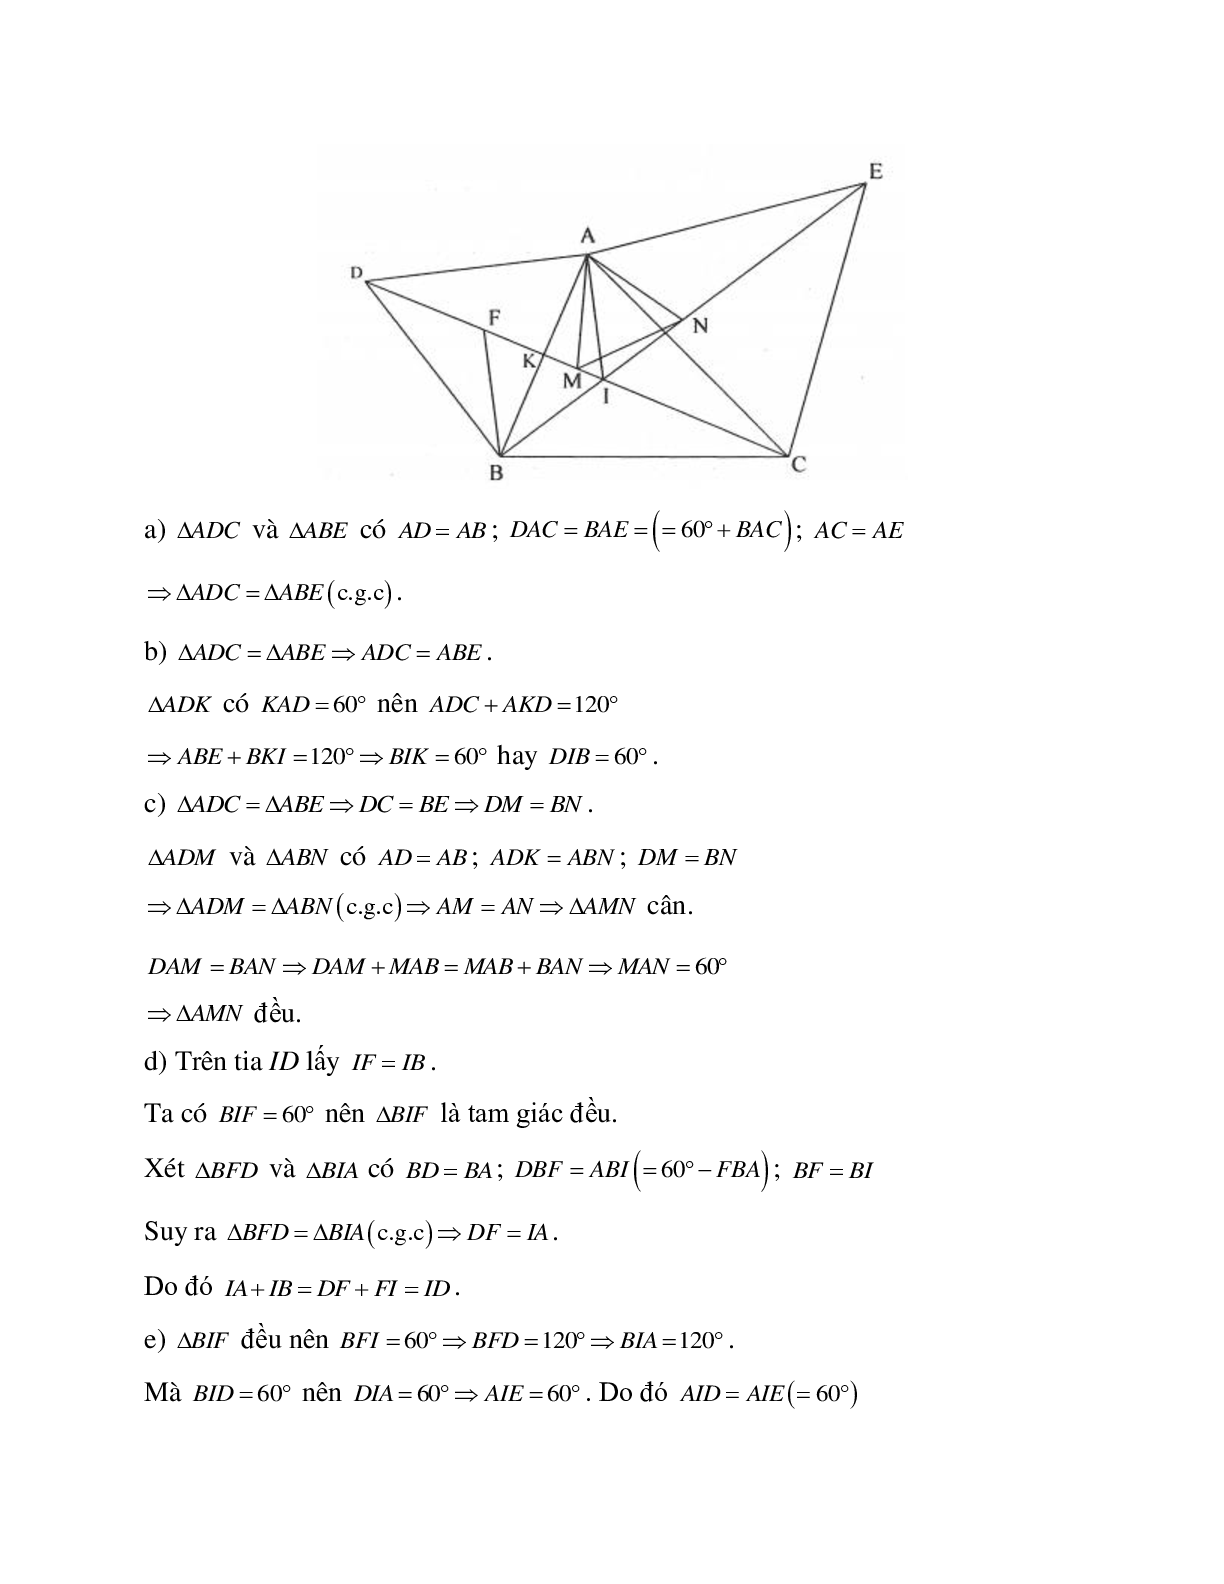 Phương pháp và bài tập về Tam giác cân - Tam giác đều có lời giải (trang 6)